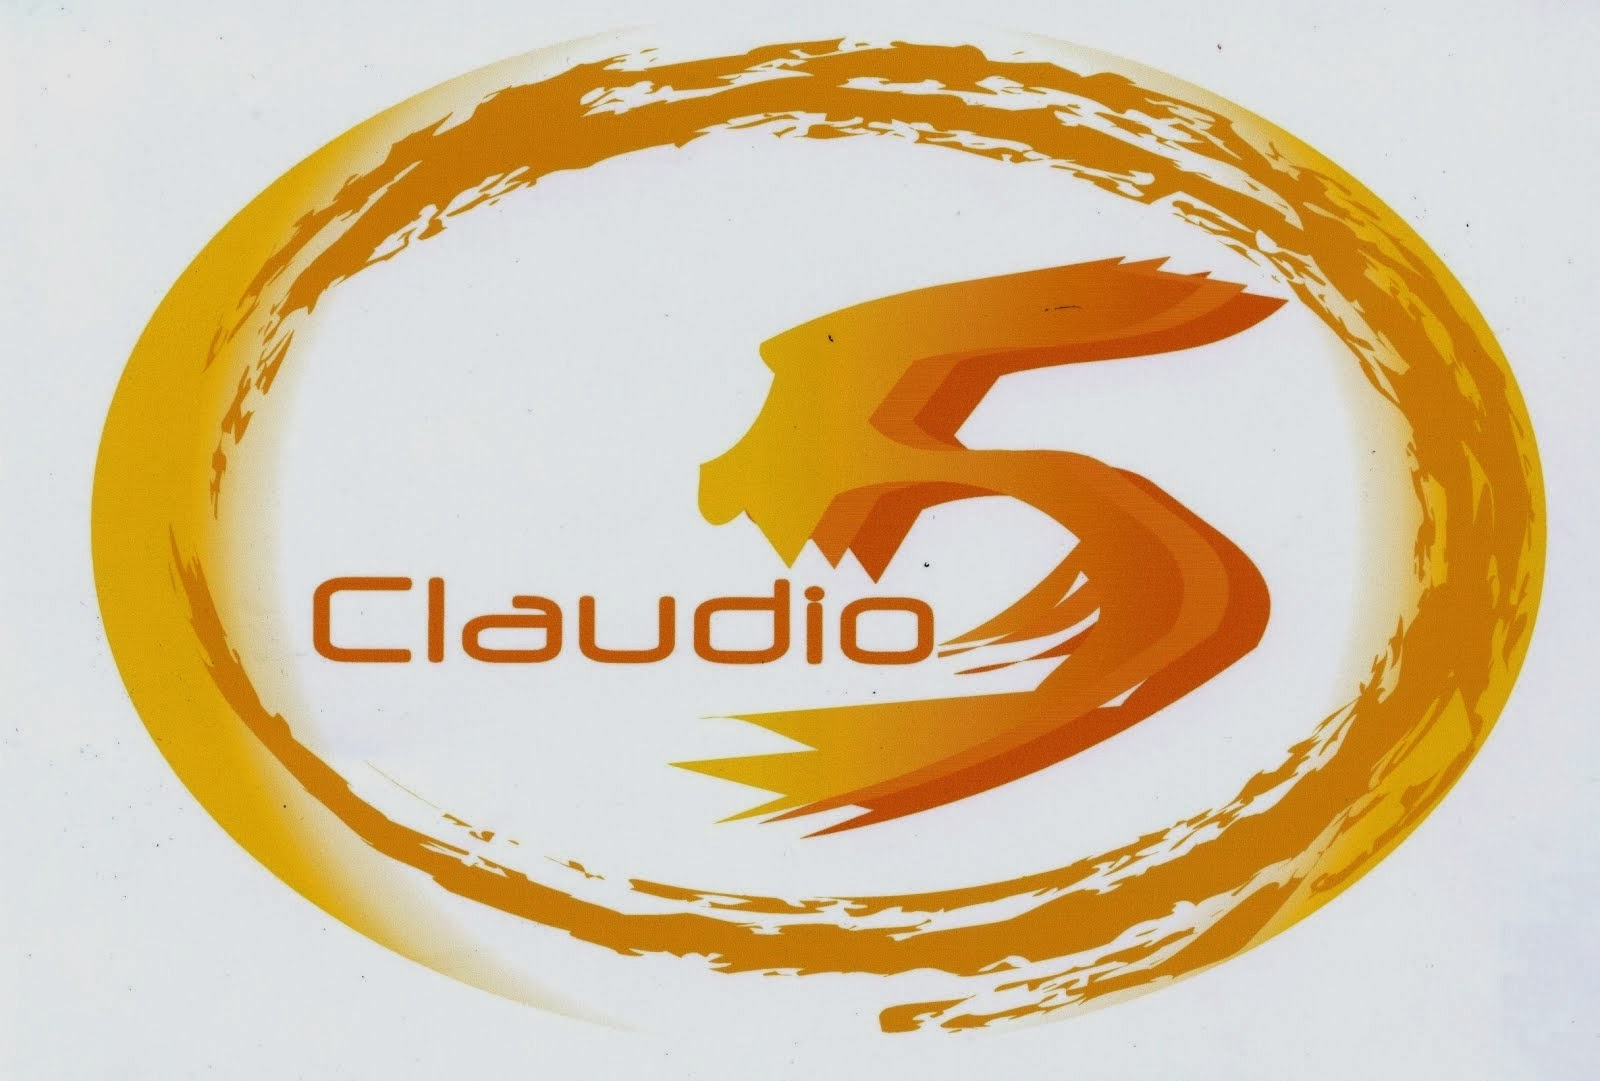 Claudio 5 srl